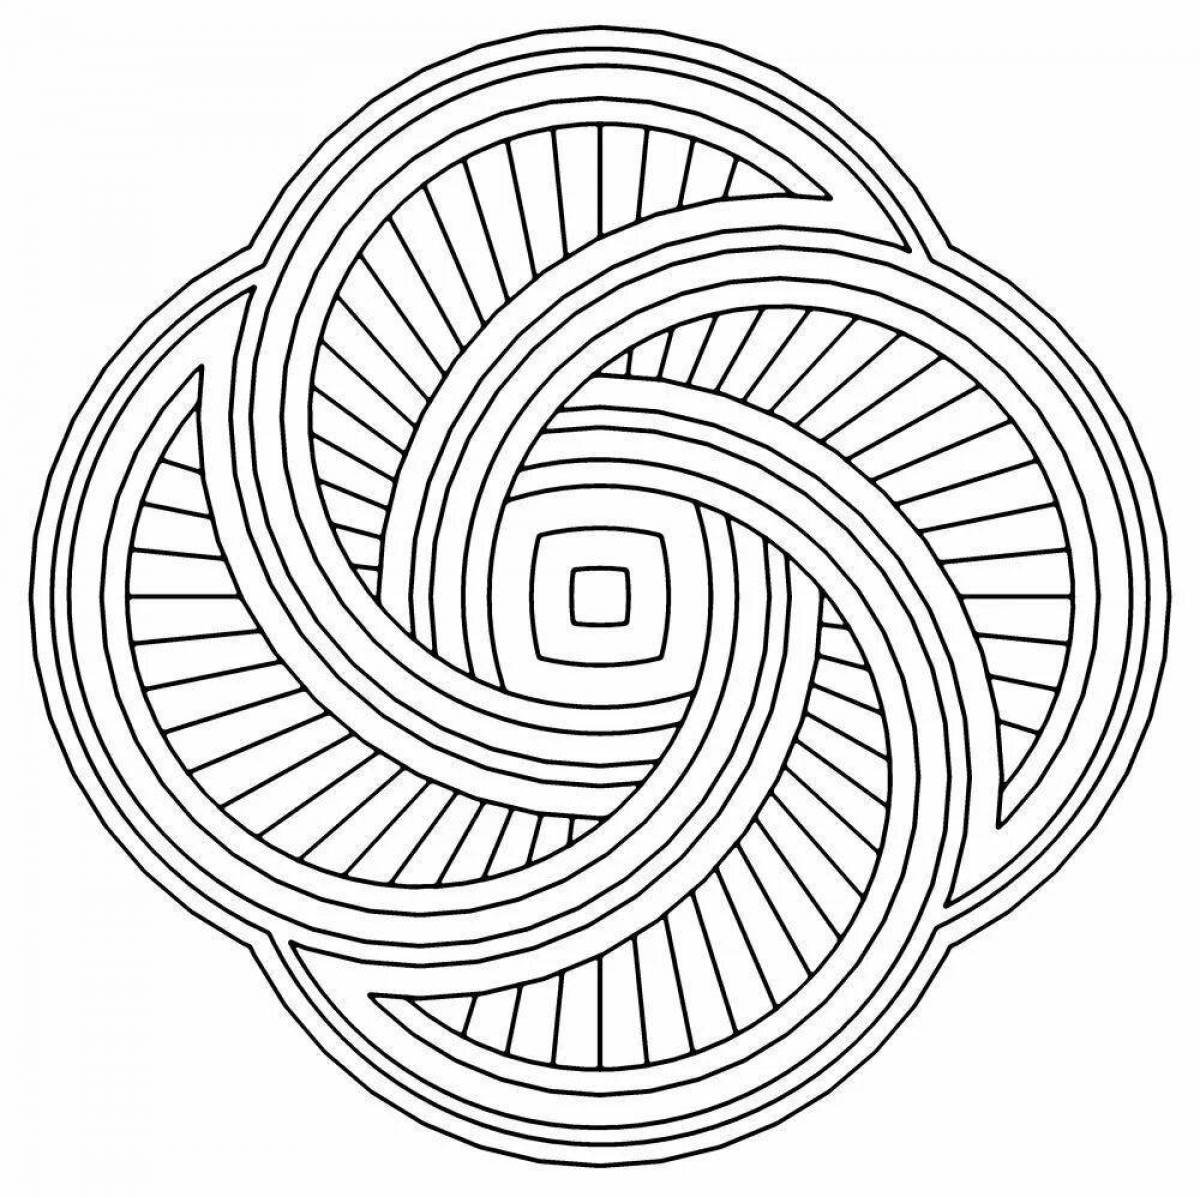 Spiral pattern #1